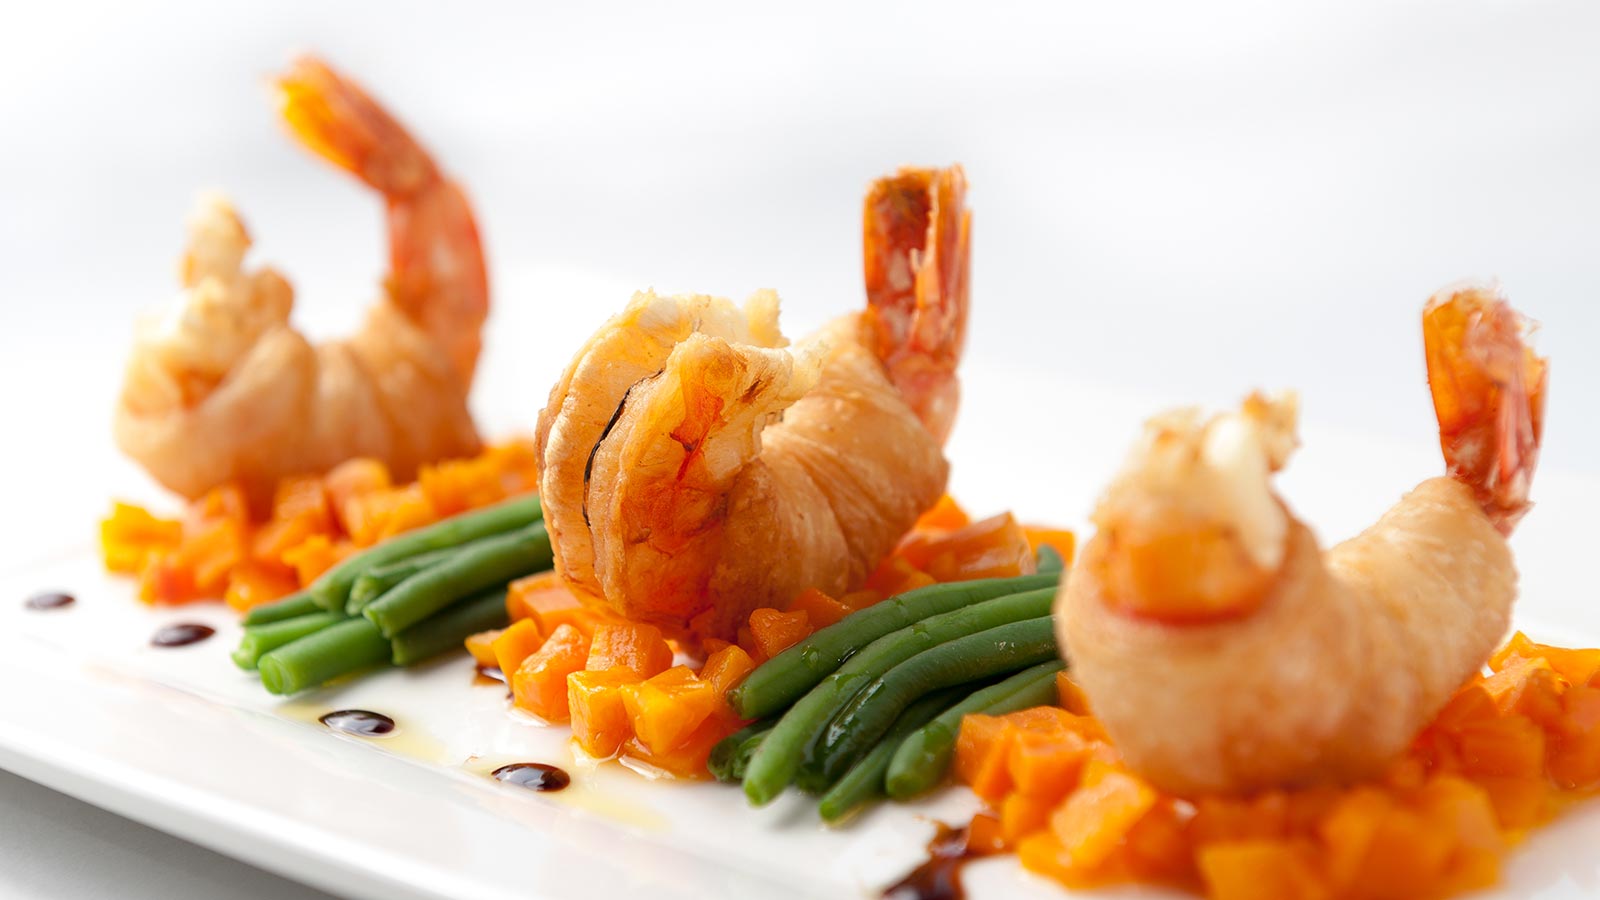 A special shrimp dish at La Serenella